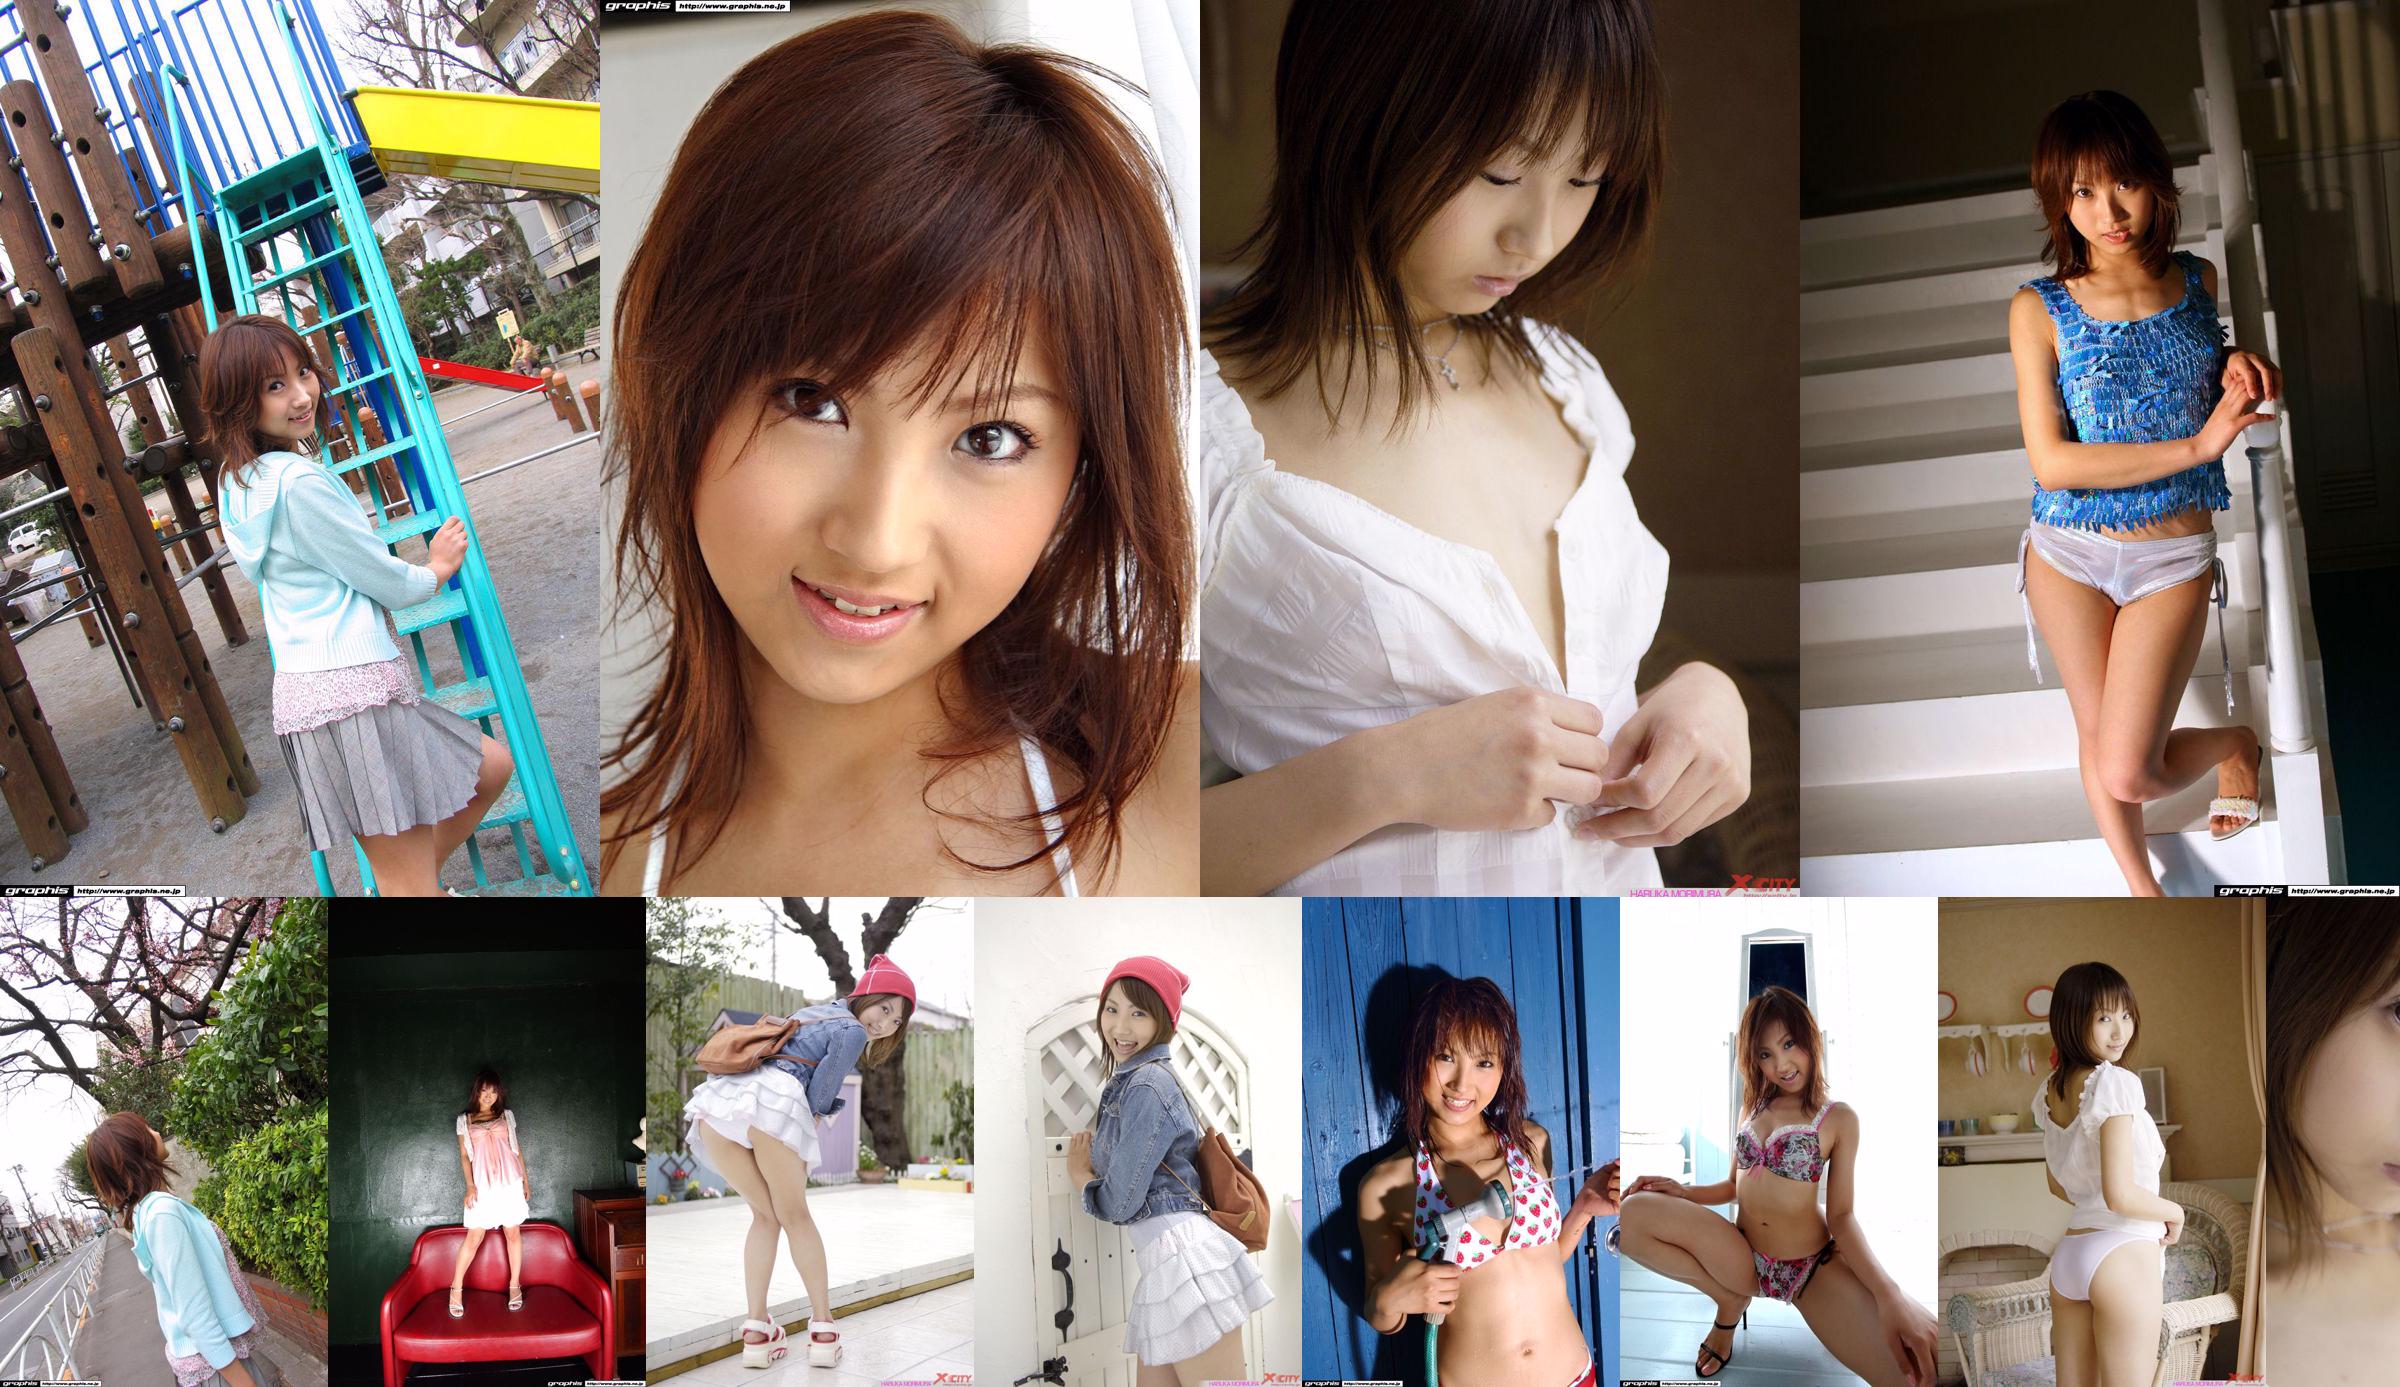 [X-City] WEB No.012 Haruka Morimura / Morimura Haruka "Morning Girl" No.234e48 Trang 2